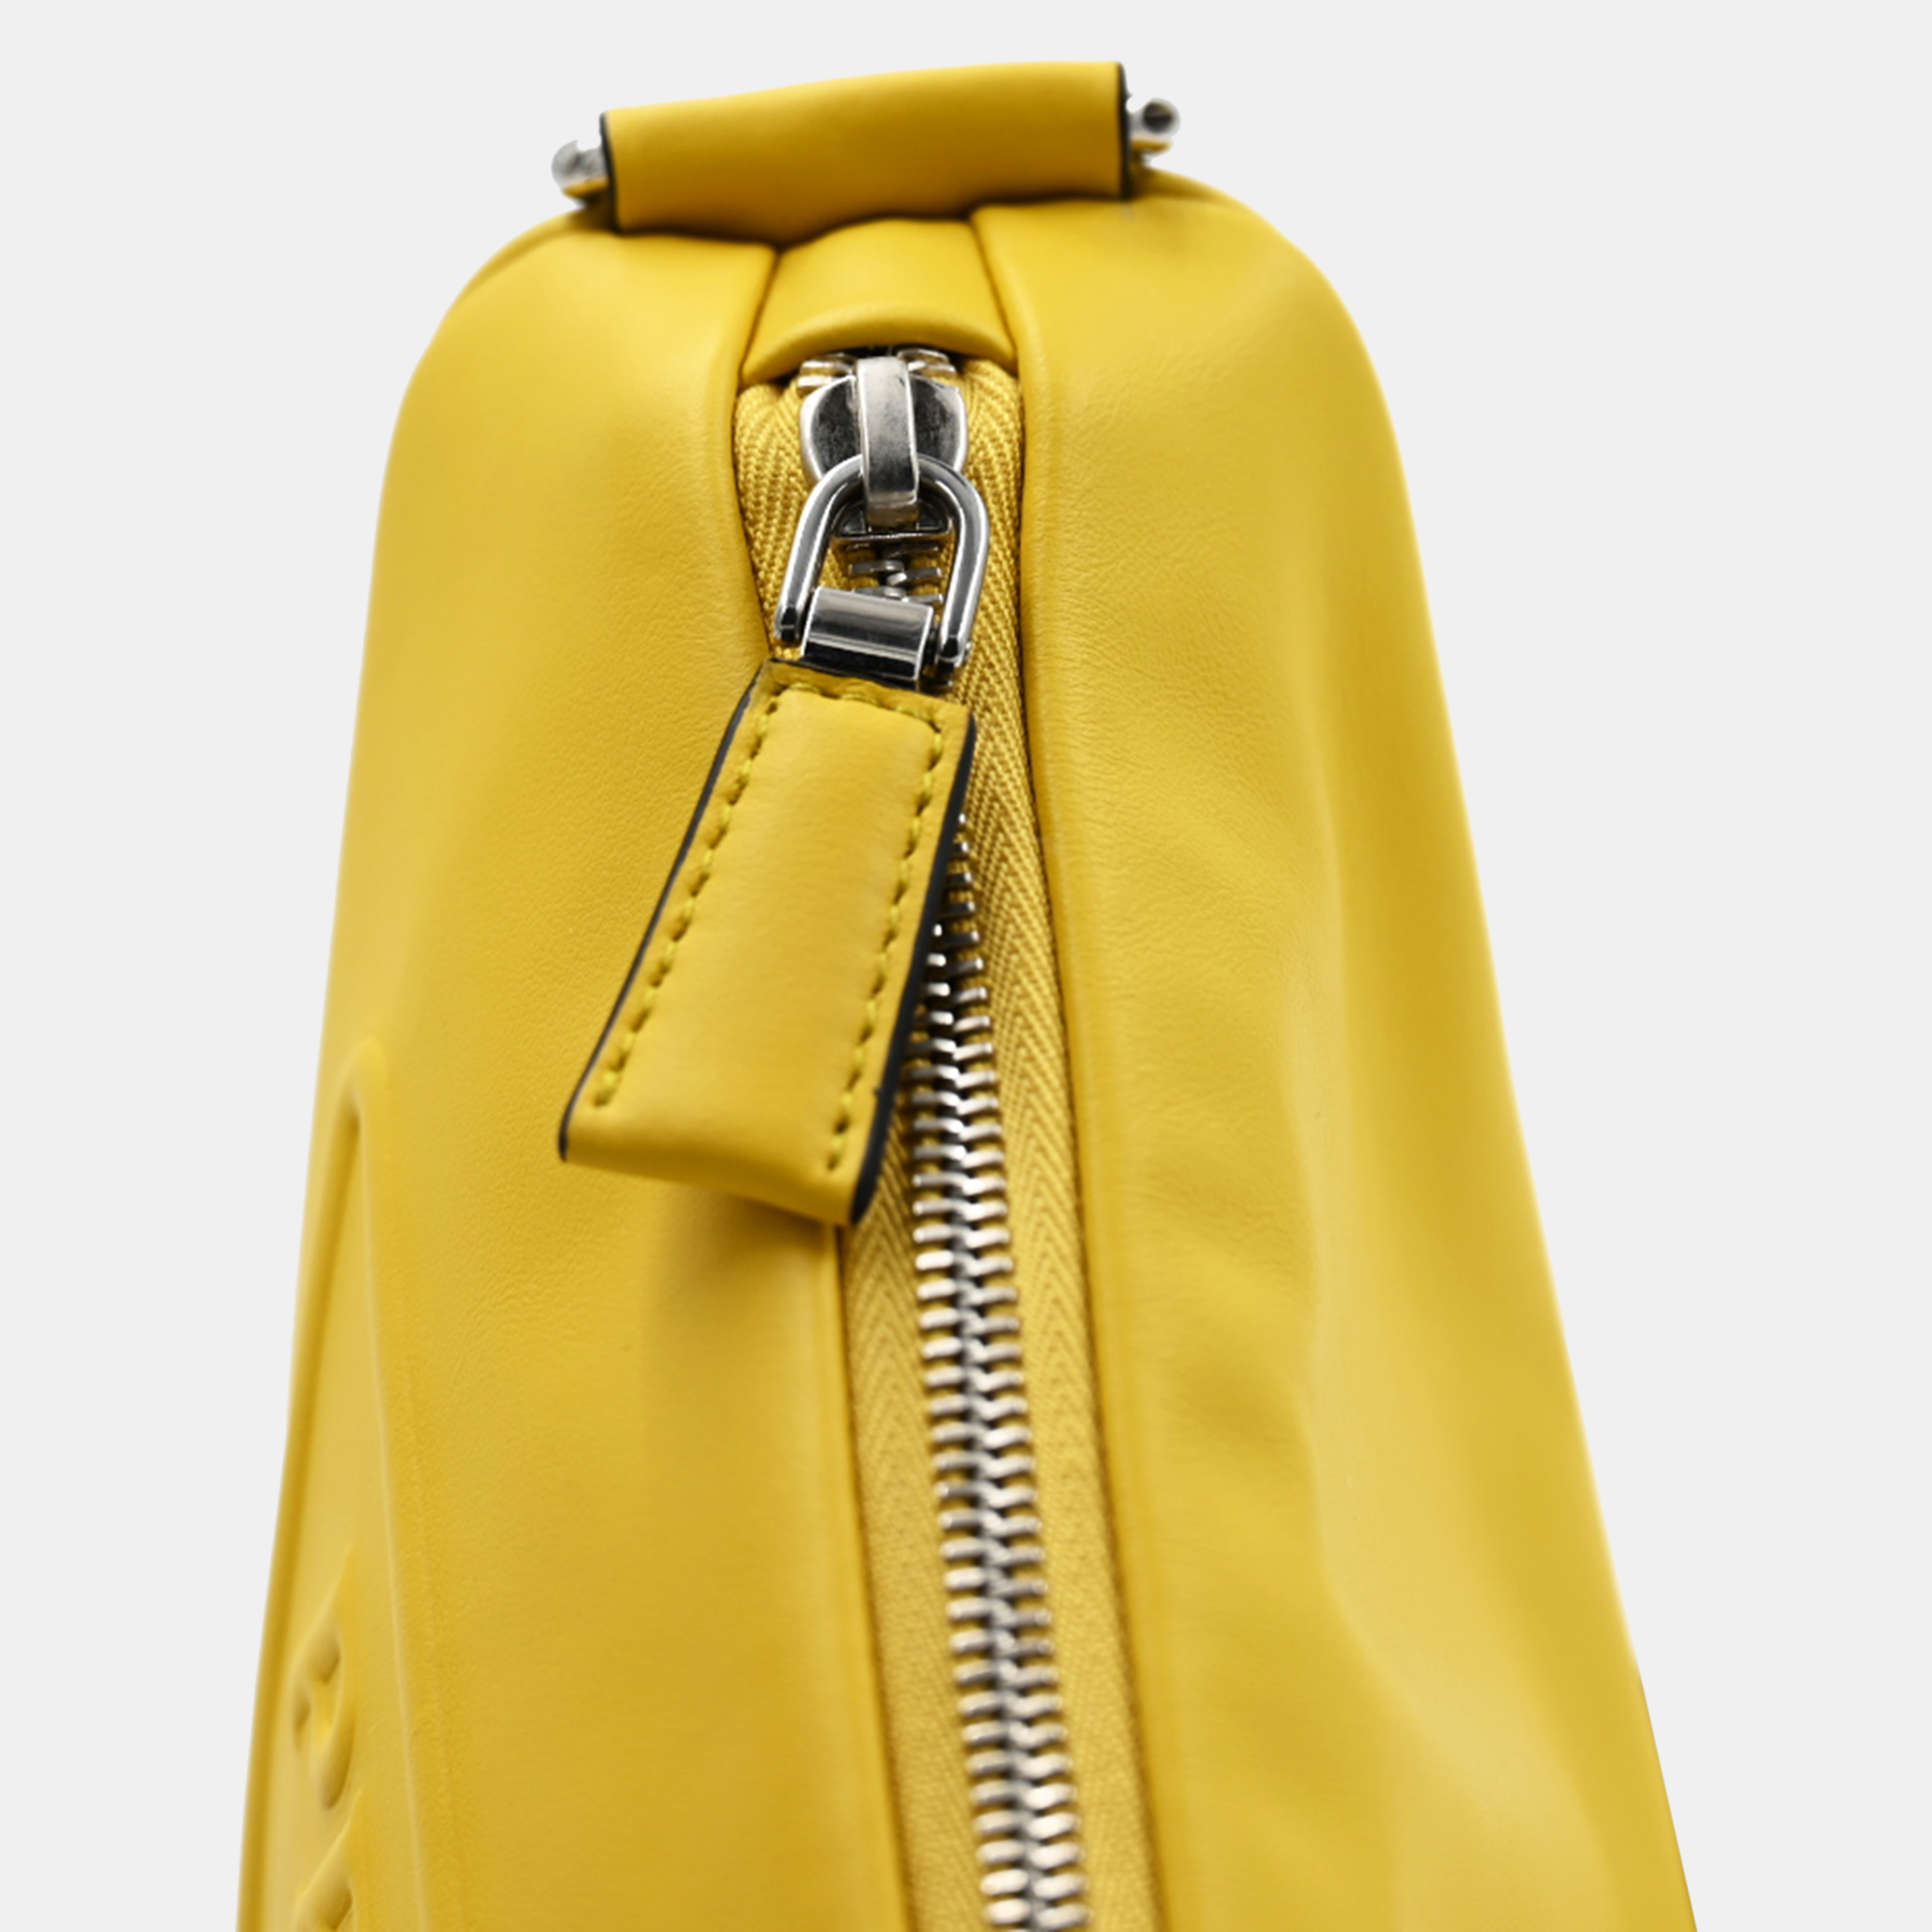 Prada Yellow Triangle Shoulder Bag